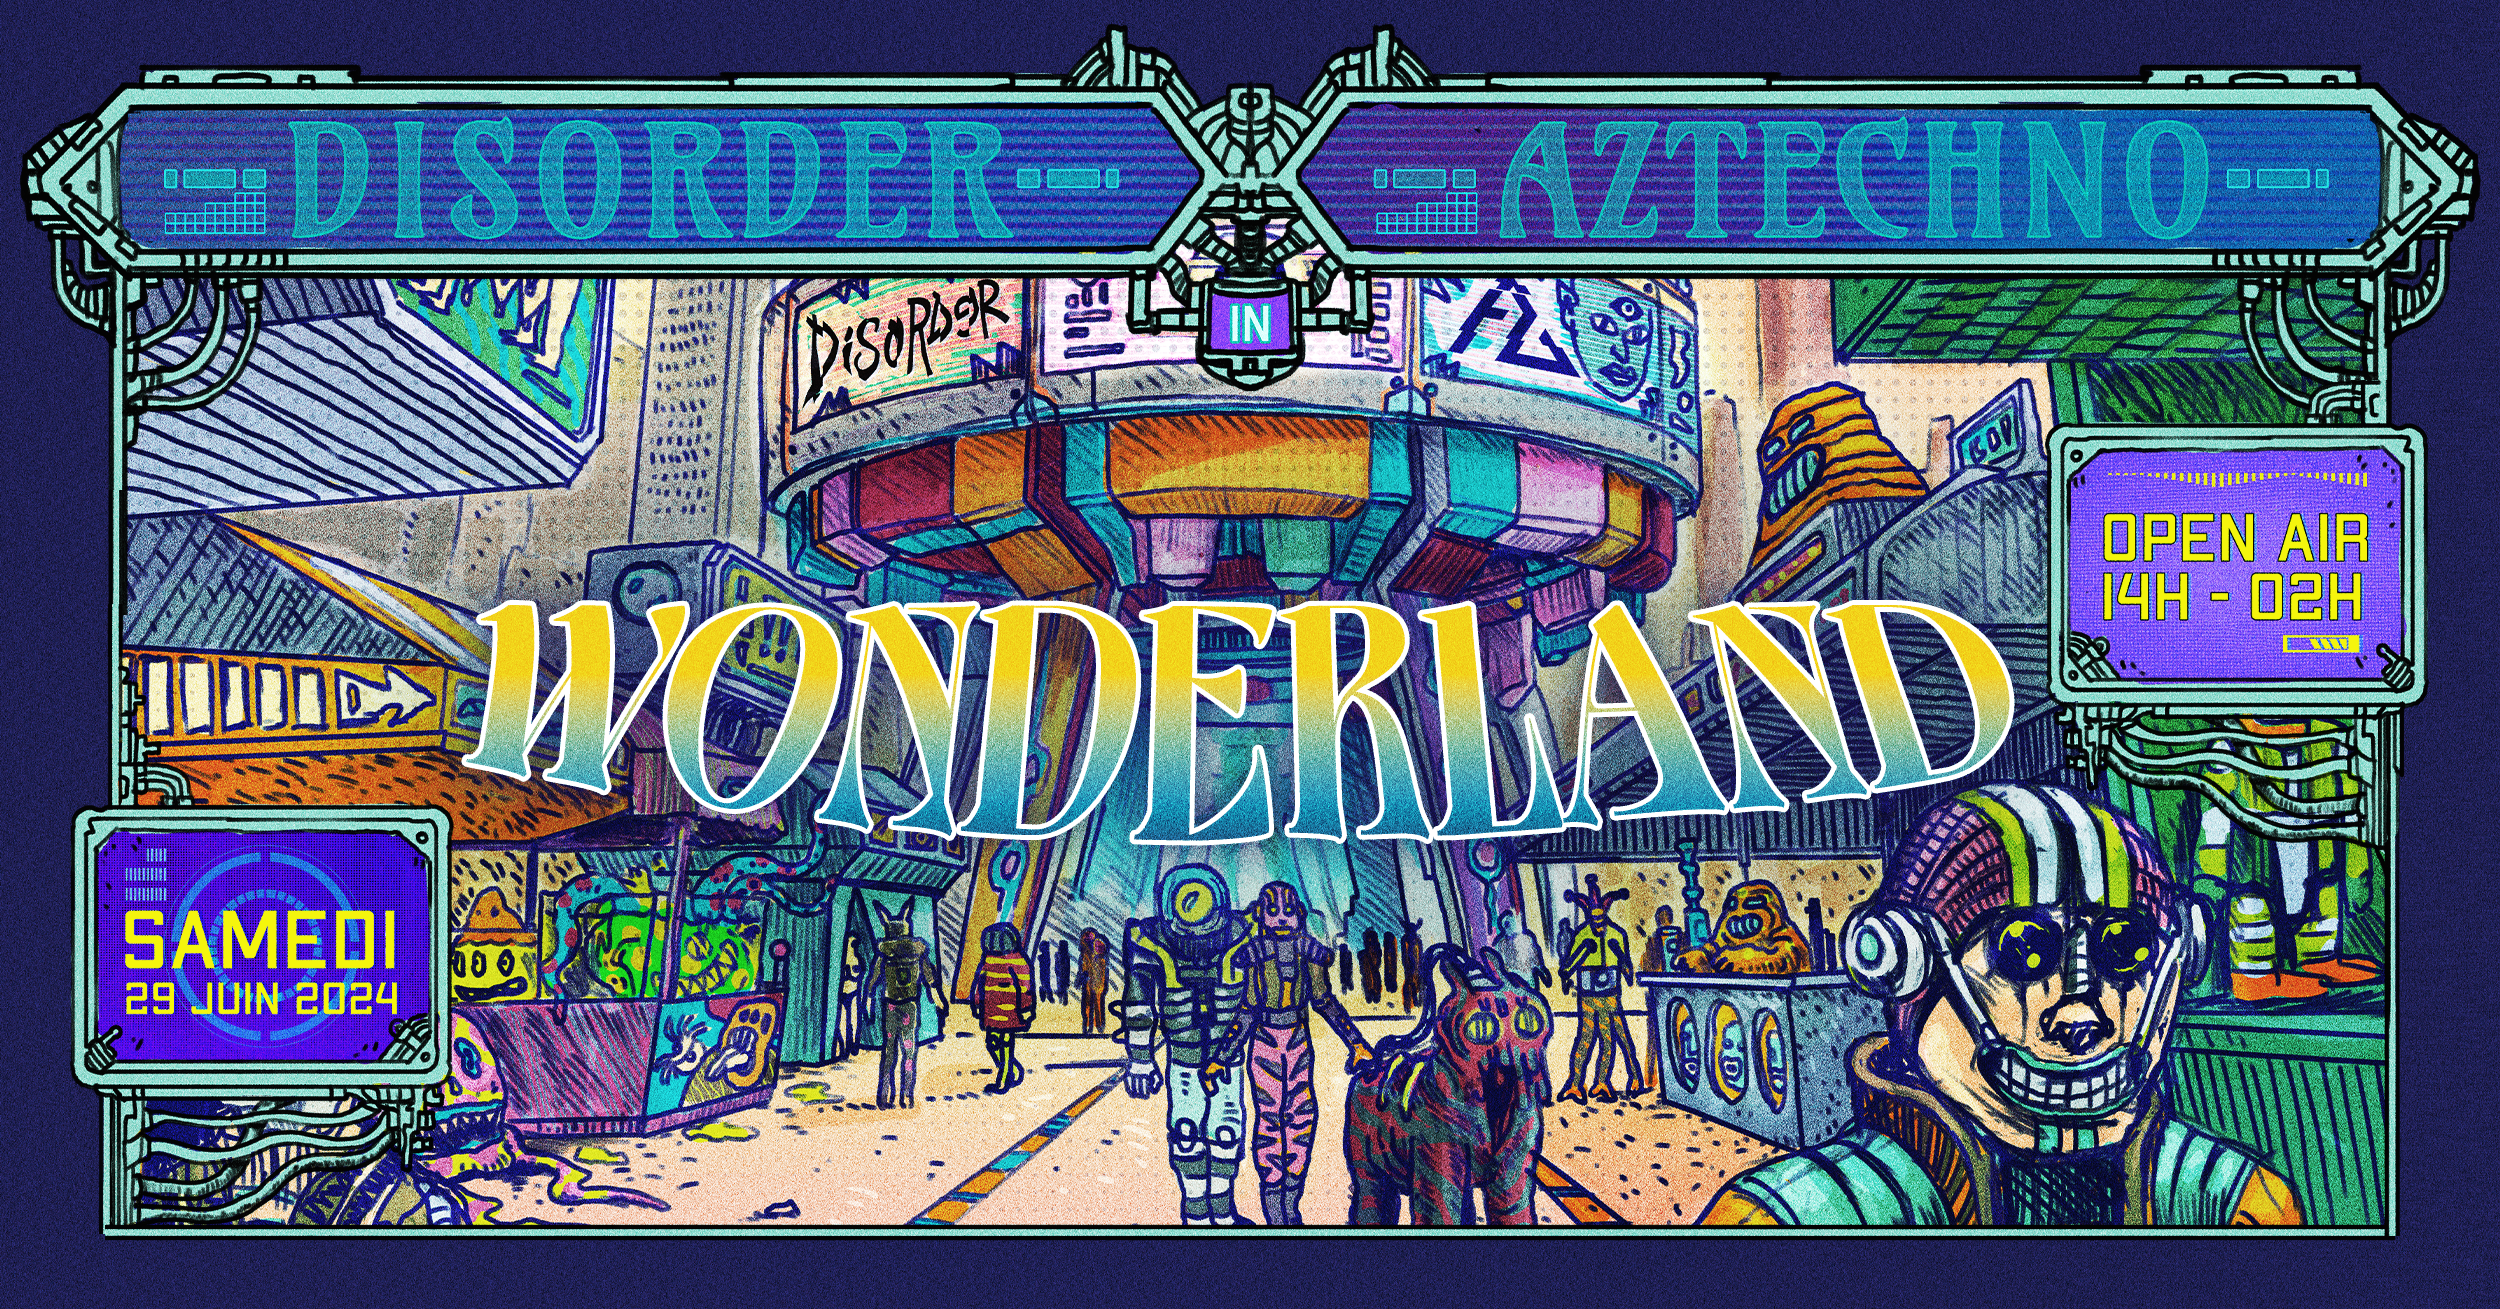 Disorder & Aztechno in Wonderland - フライヤー表